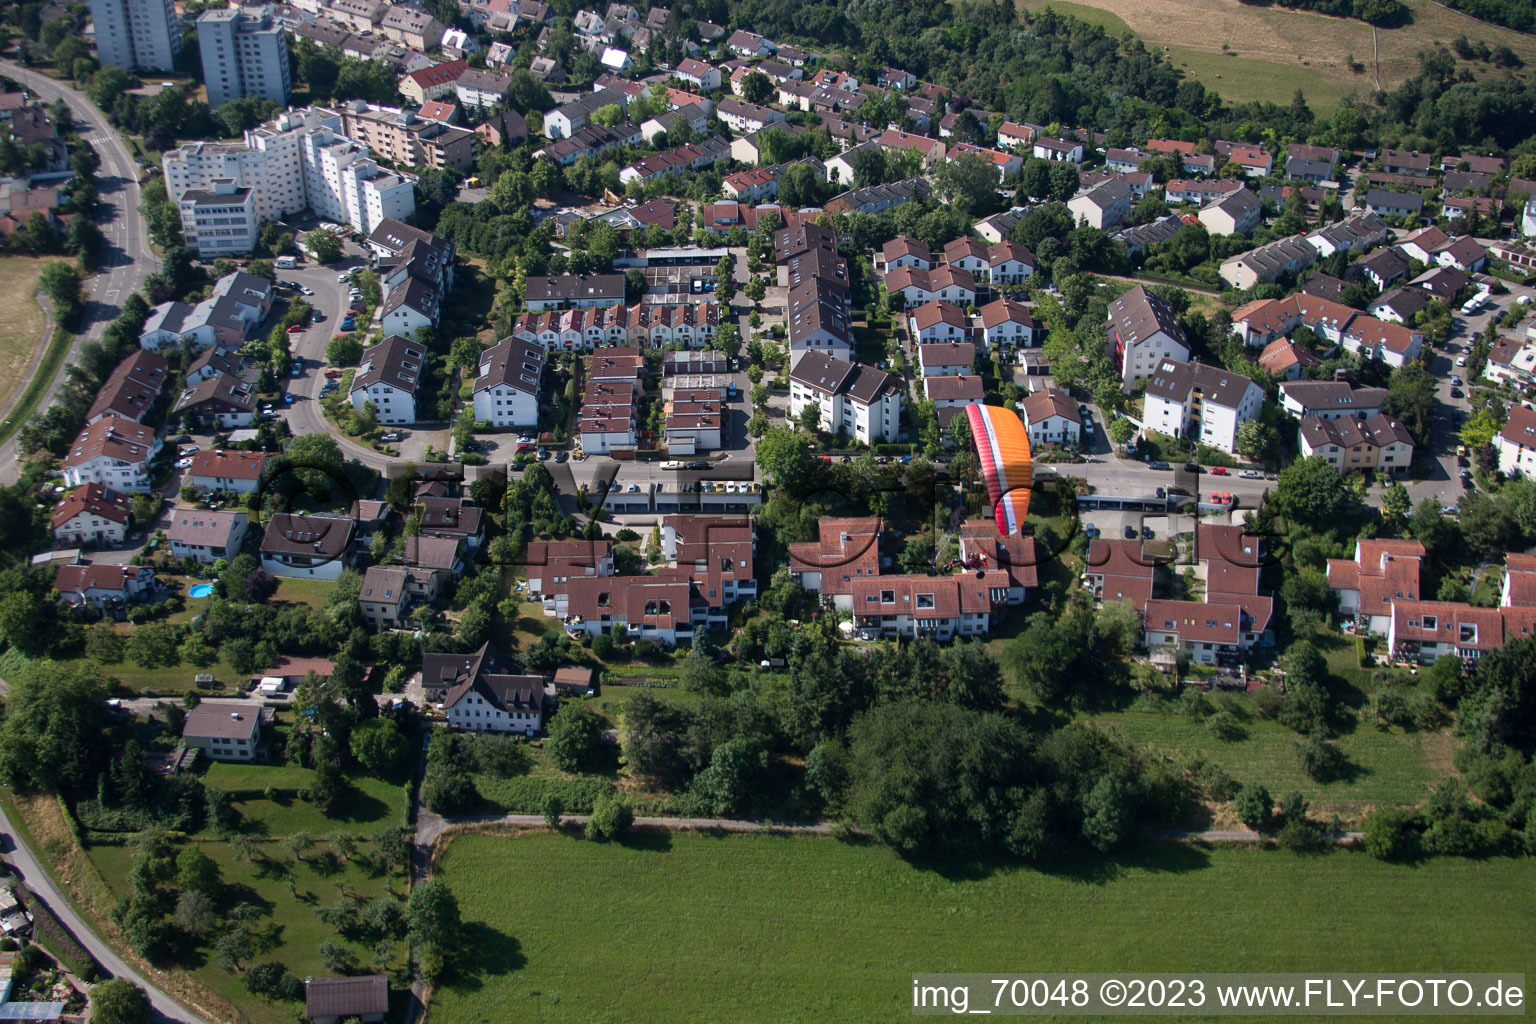 Leonberg dans le département Bade-Wurtemberg, Allemagne vue d'en haut